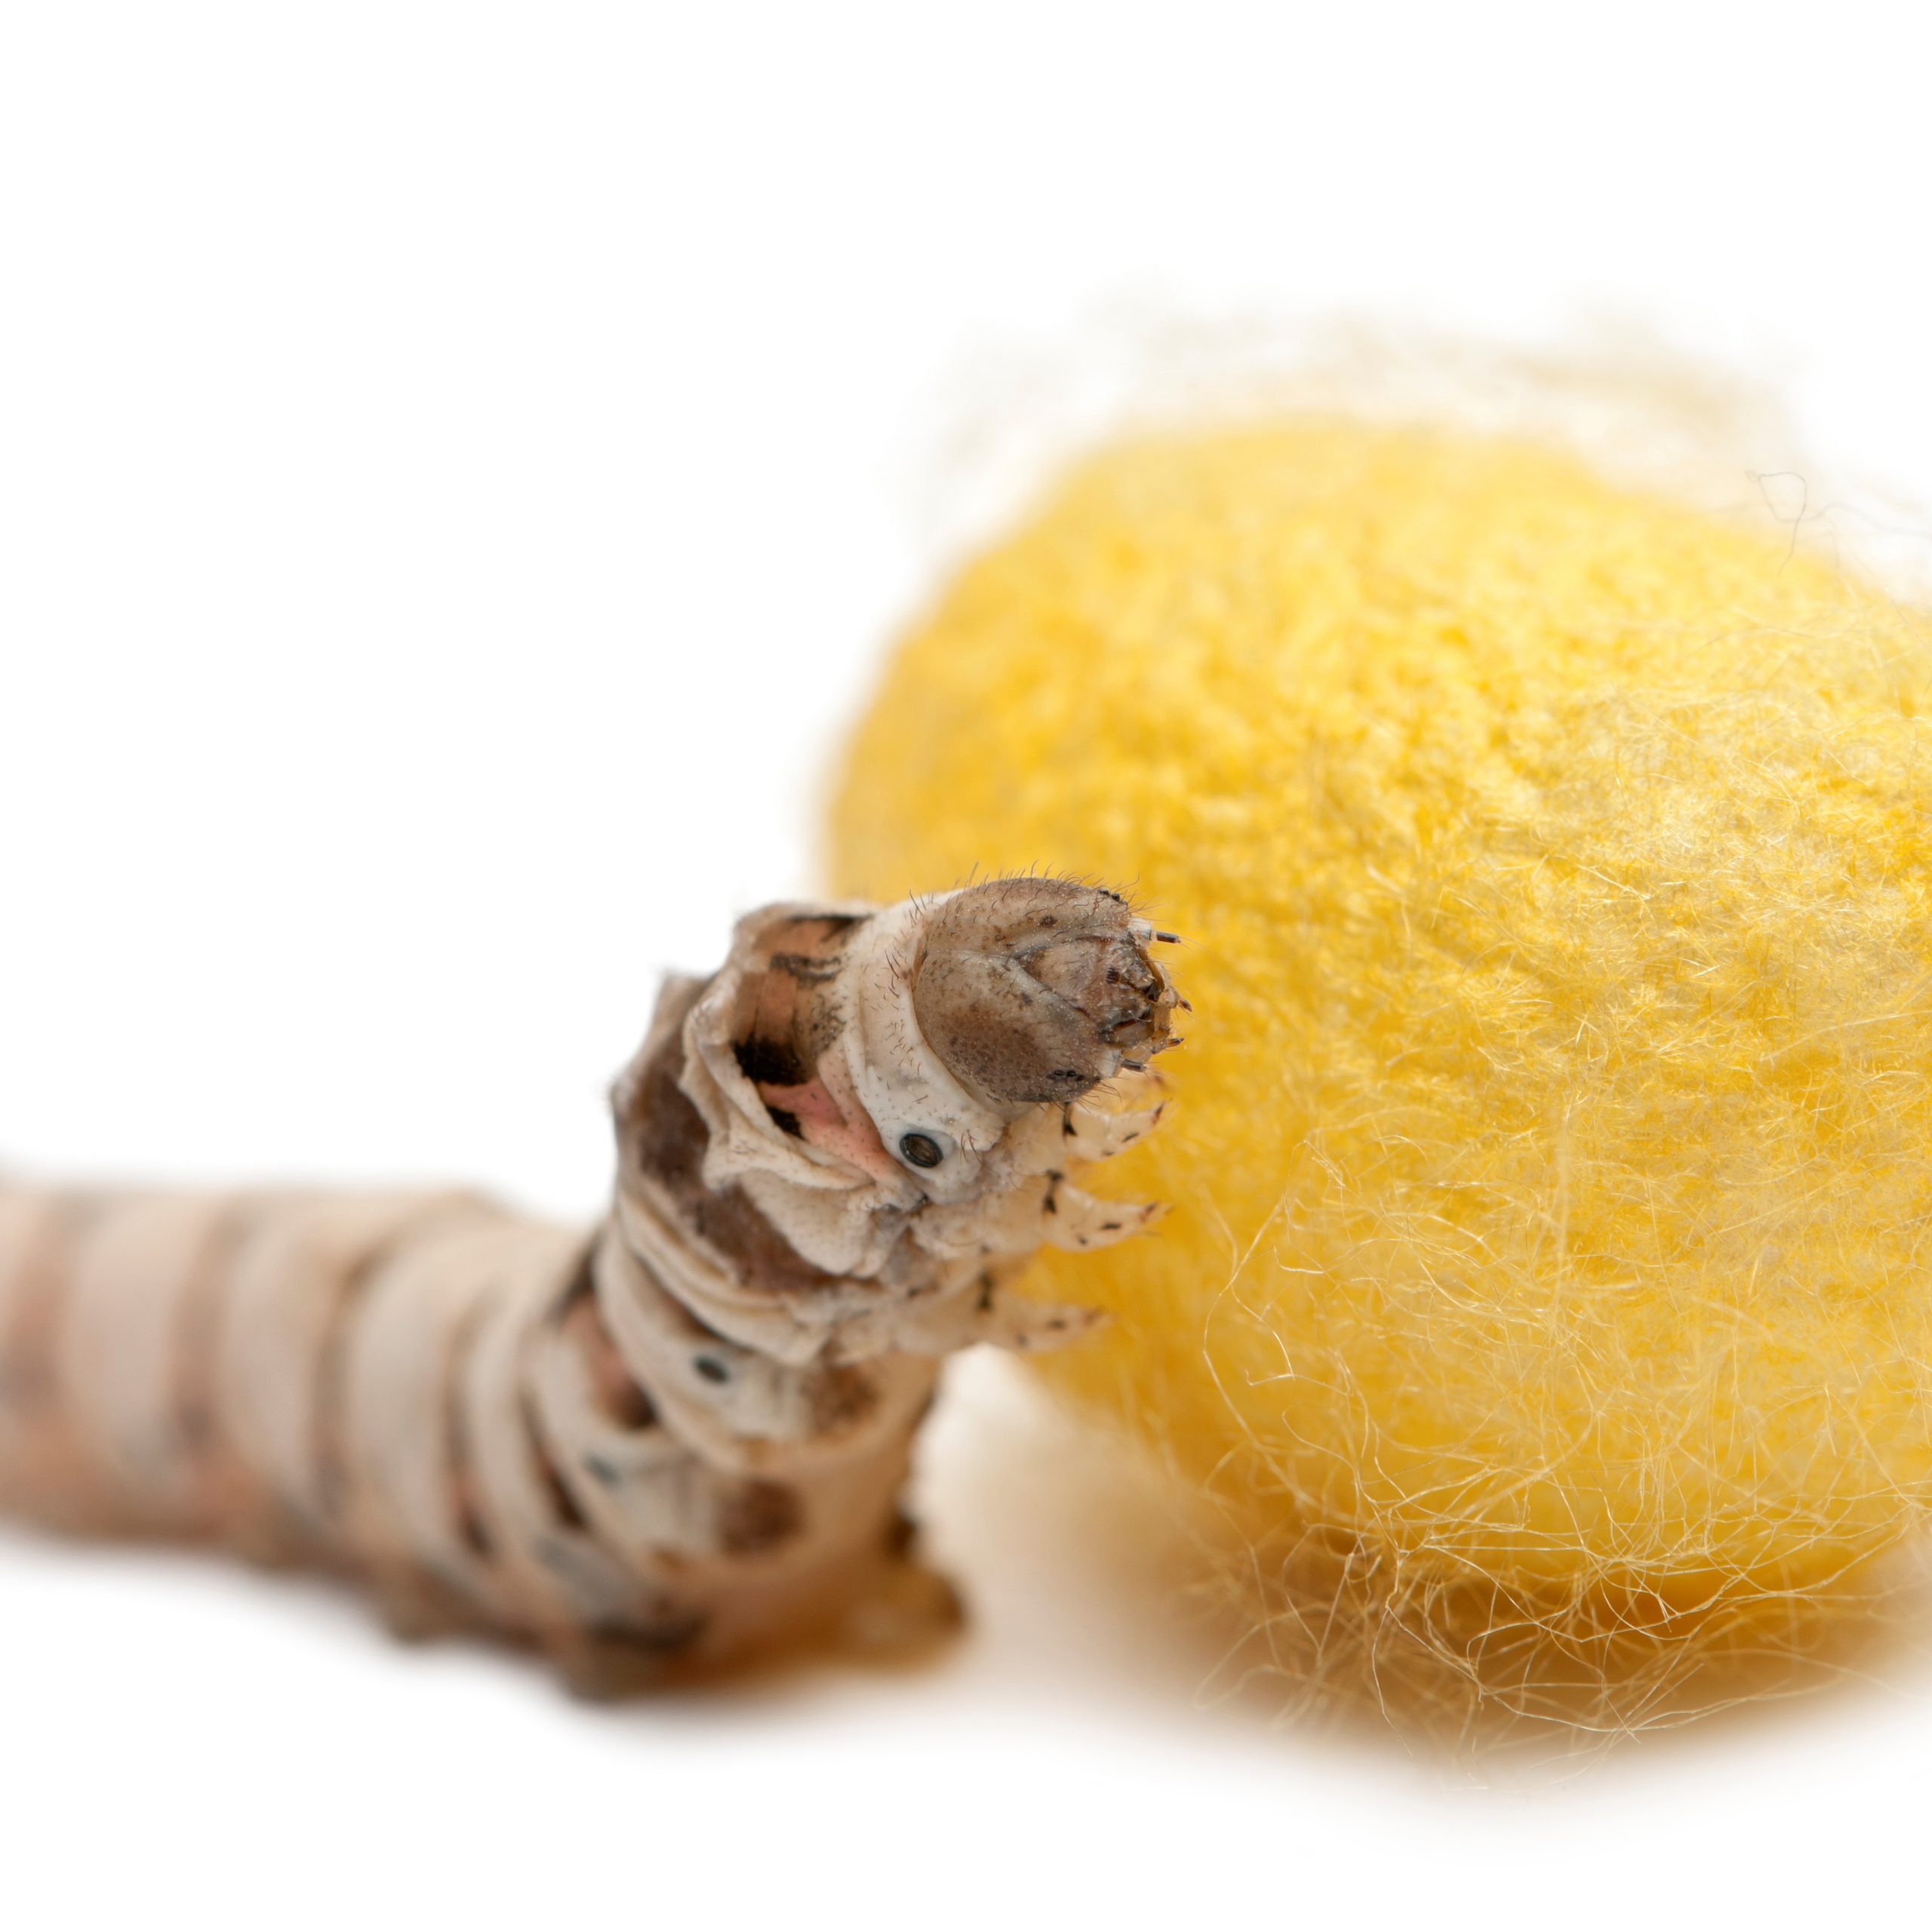 Lee más sobre el artículo Cómo criar gusanos de seda: consejos y trucos para principiantes